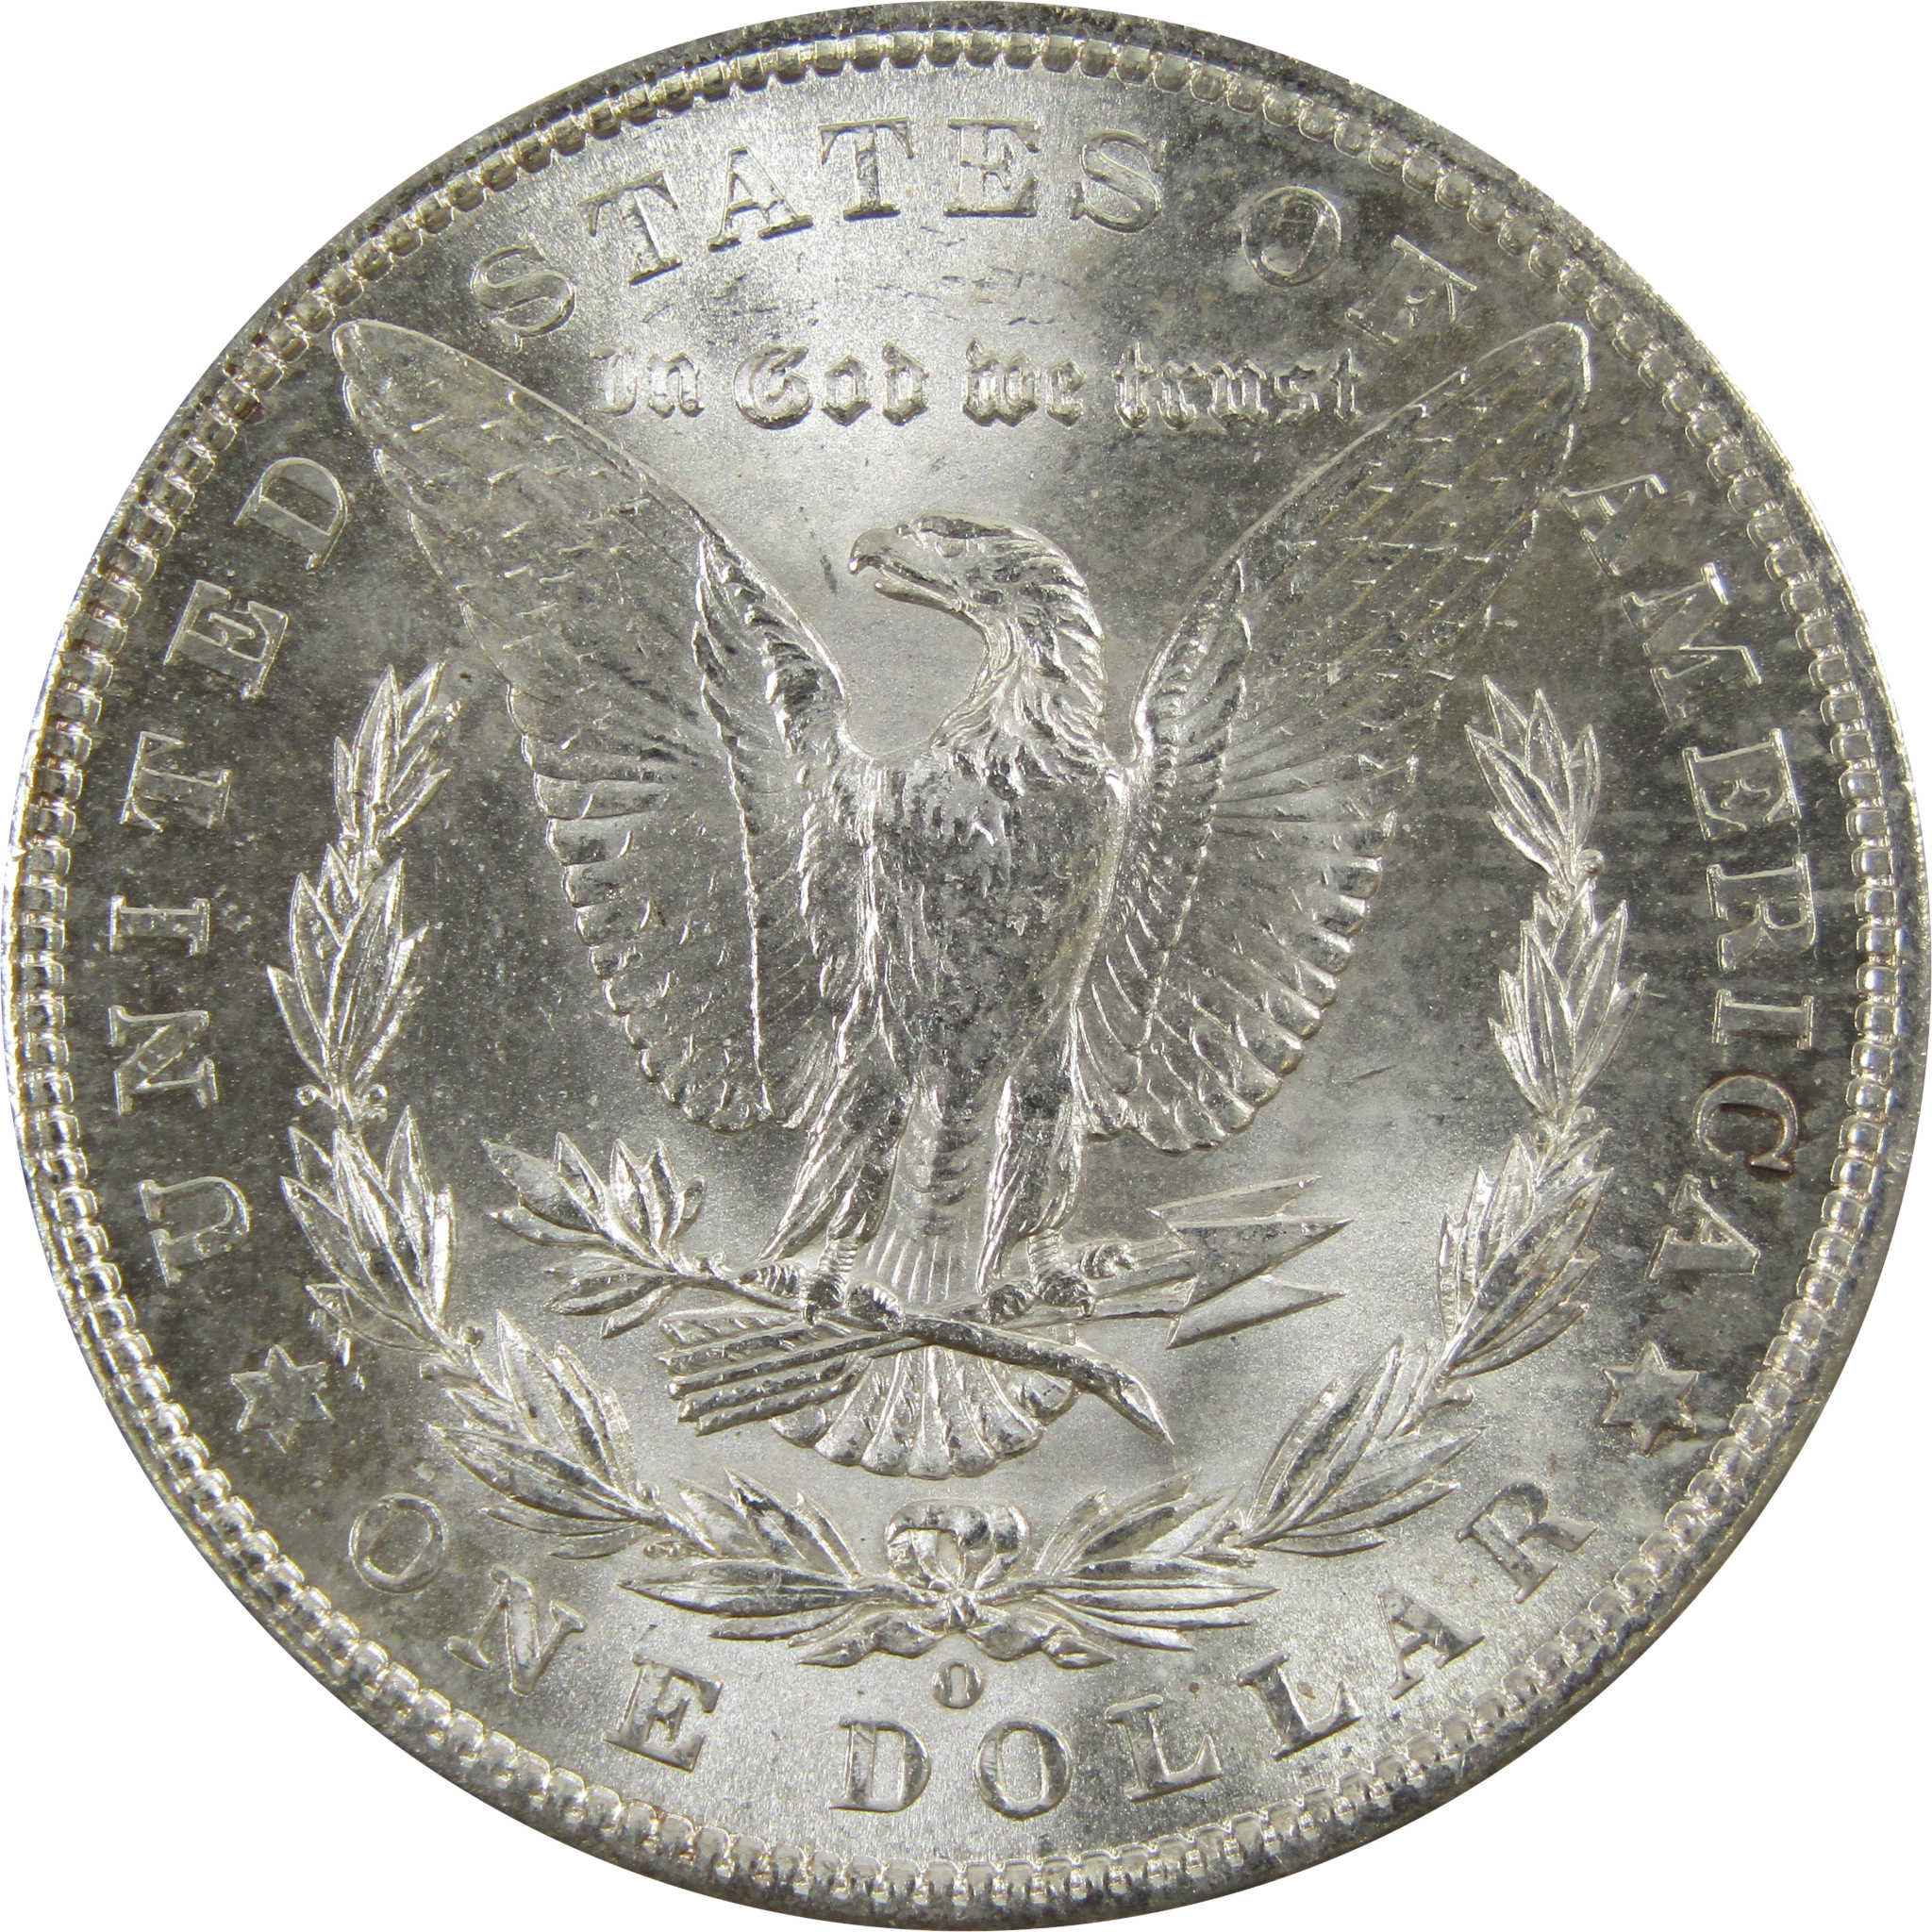 1902 O Morgan Dollar BU Uncirculated 90% Silver $1 Coin SKU:I5218 - Morgan coin - Morgan silver dollar - Morgan silver dollar for sale - Profile Coins &amp; Collectibles